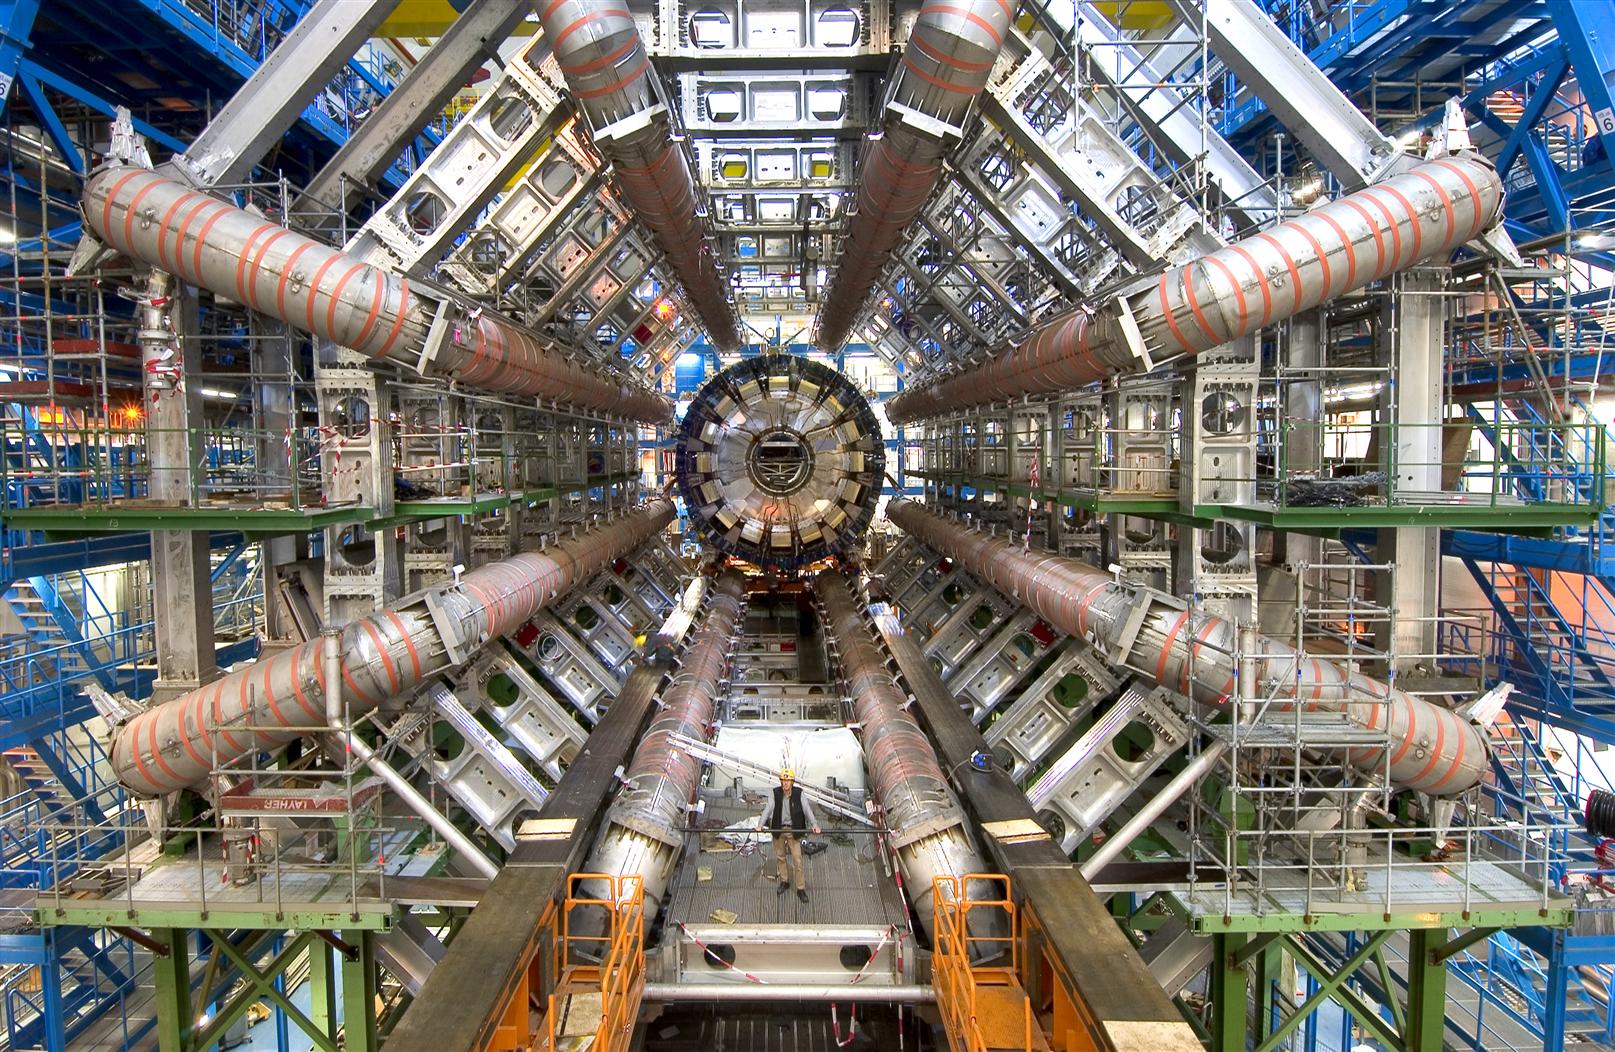 El CERN se acerca más al público con un supermoderno centro para llevar la ciencia a todos